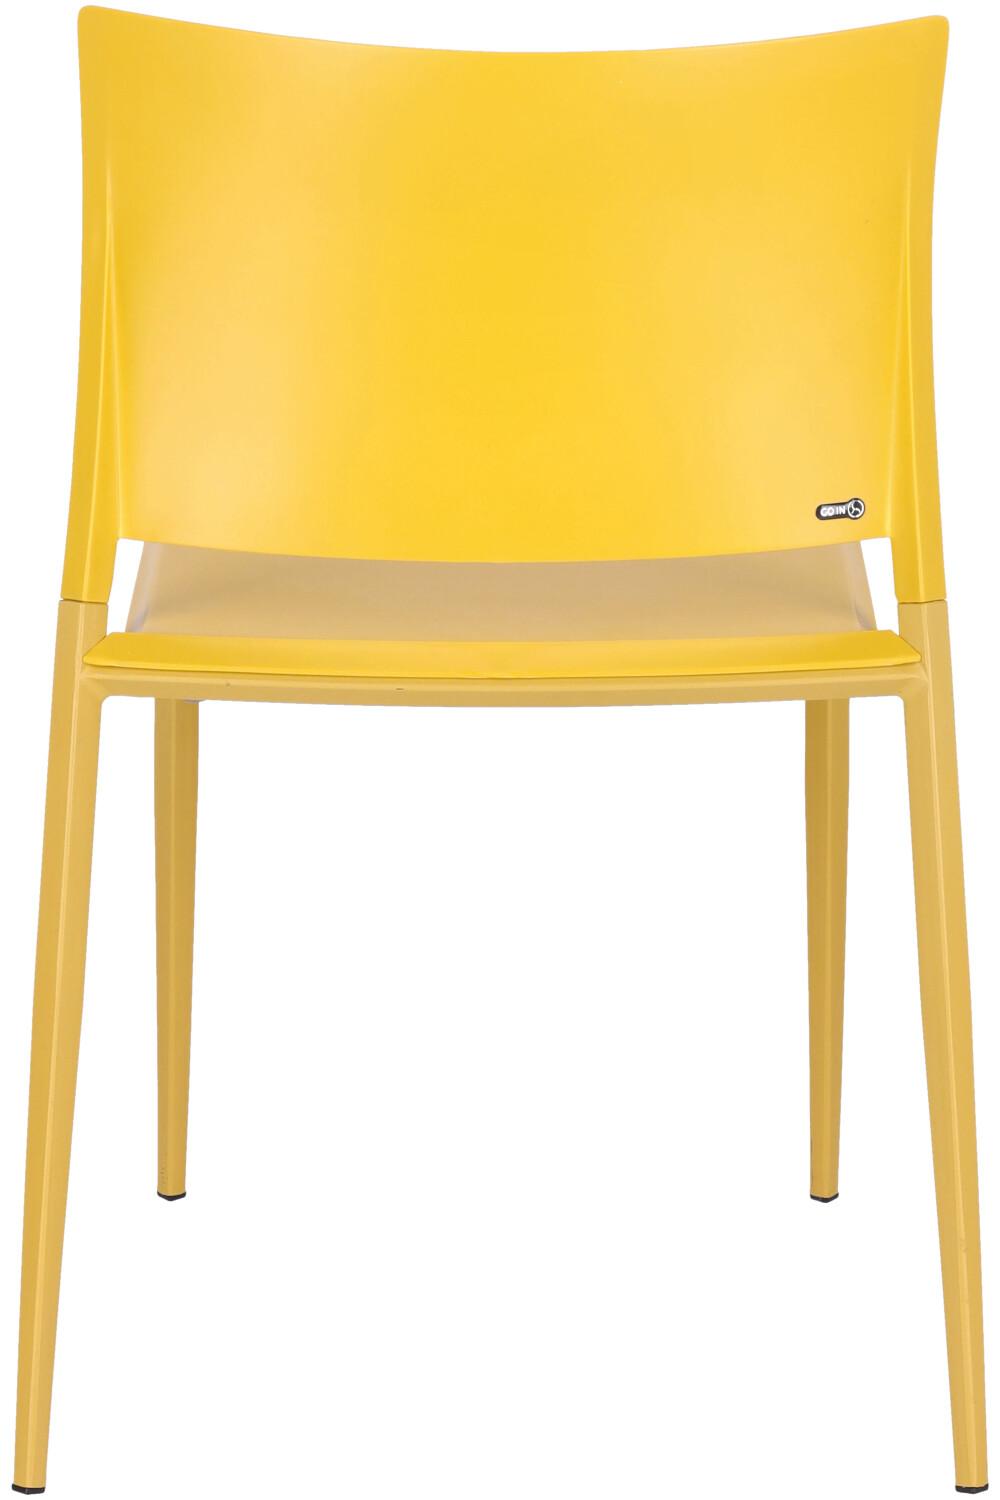 Abbildung chair Barlin Rückansicht